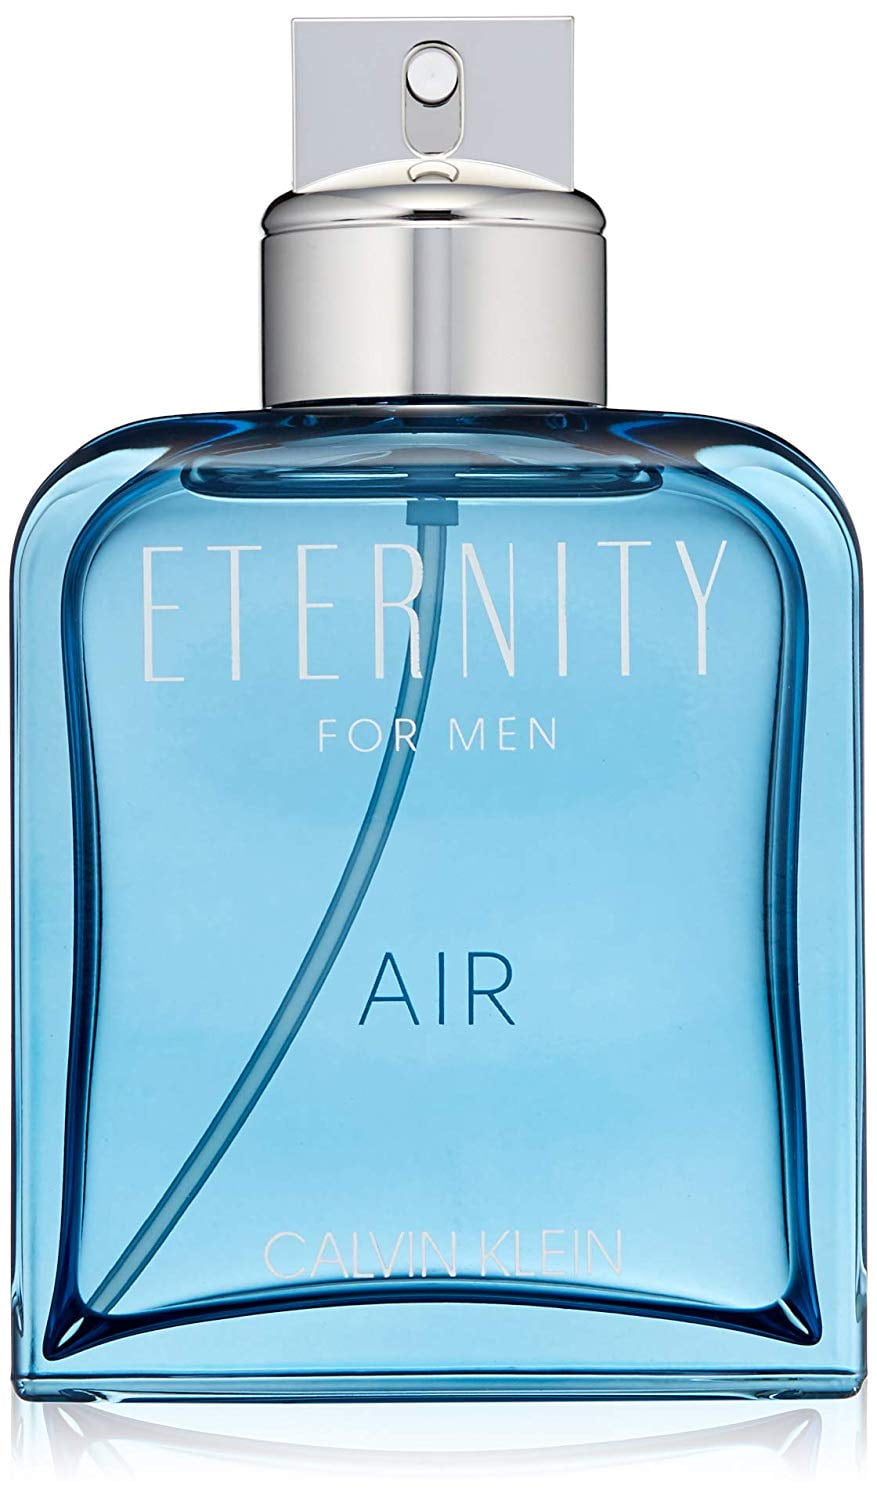 Calvin Klein Beauty Eternity Air Eau de Toilette, Cologne for Men,  Oz -  